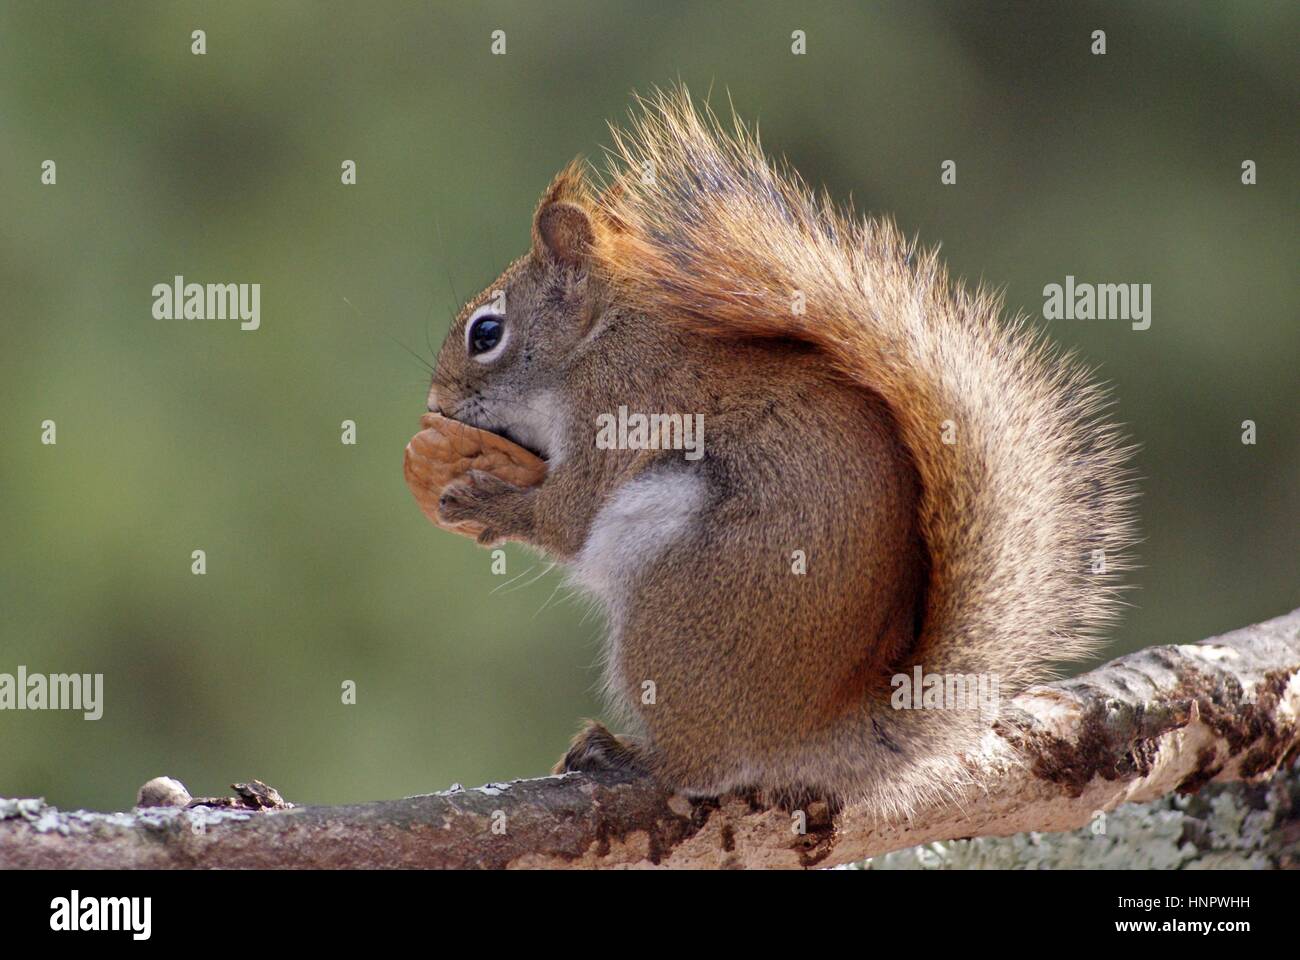 Ein amerikanisches rotes Eichhörnchen Tamiasciurus hudsonicus, das auf einem Ast sitzt und eine Nuss isst. Stockfoto